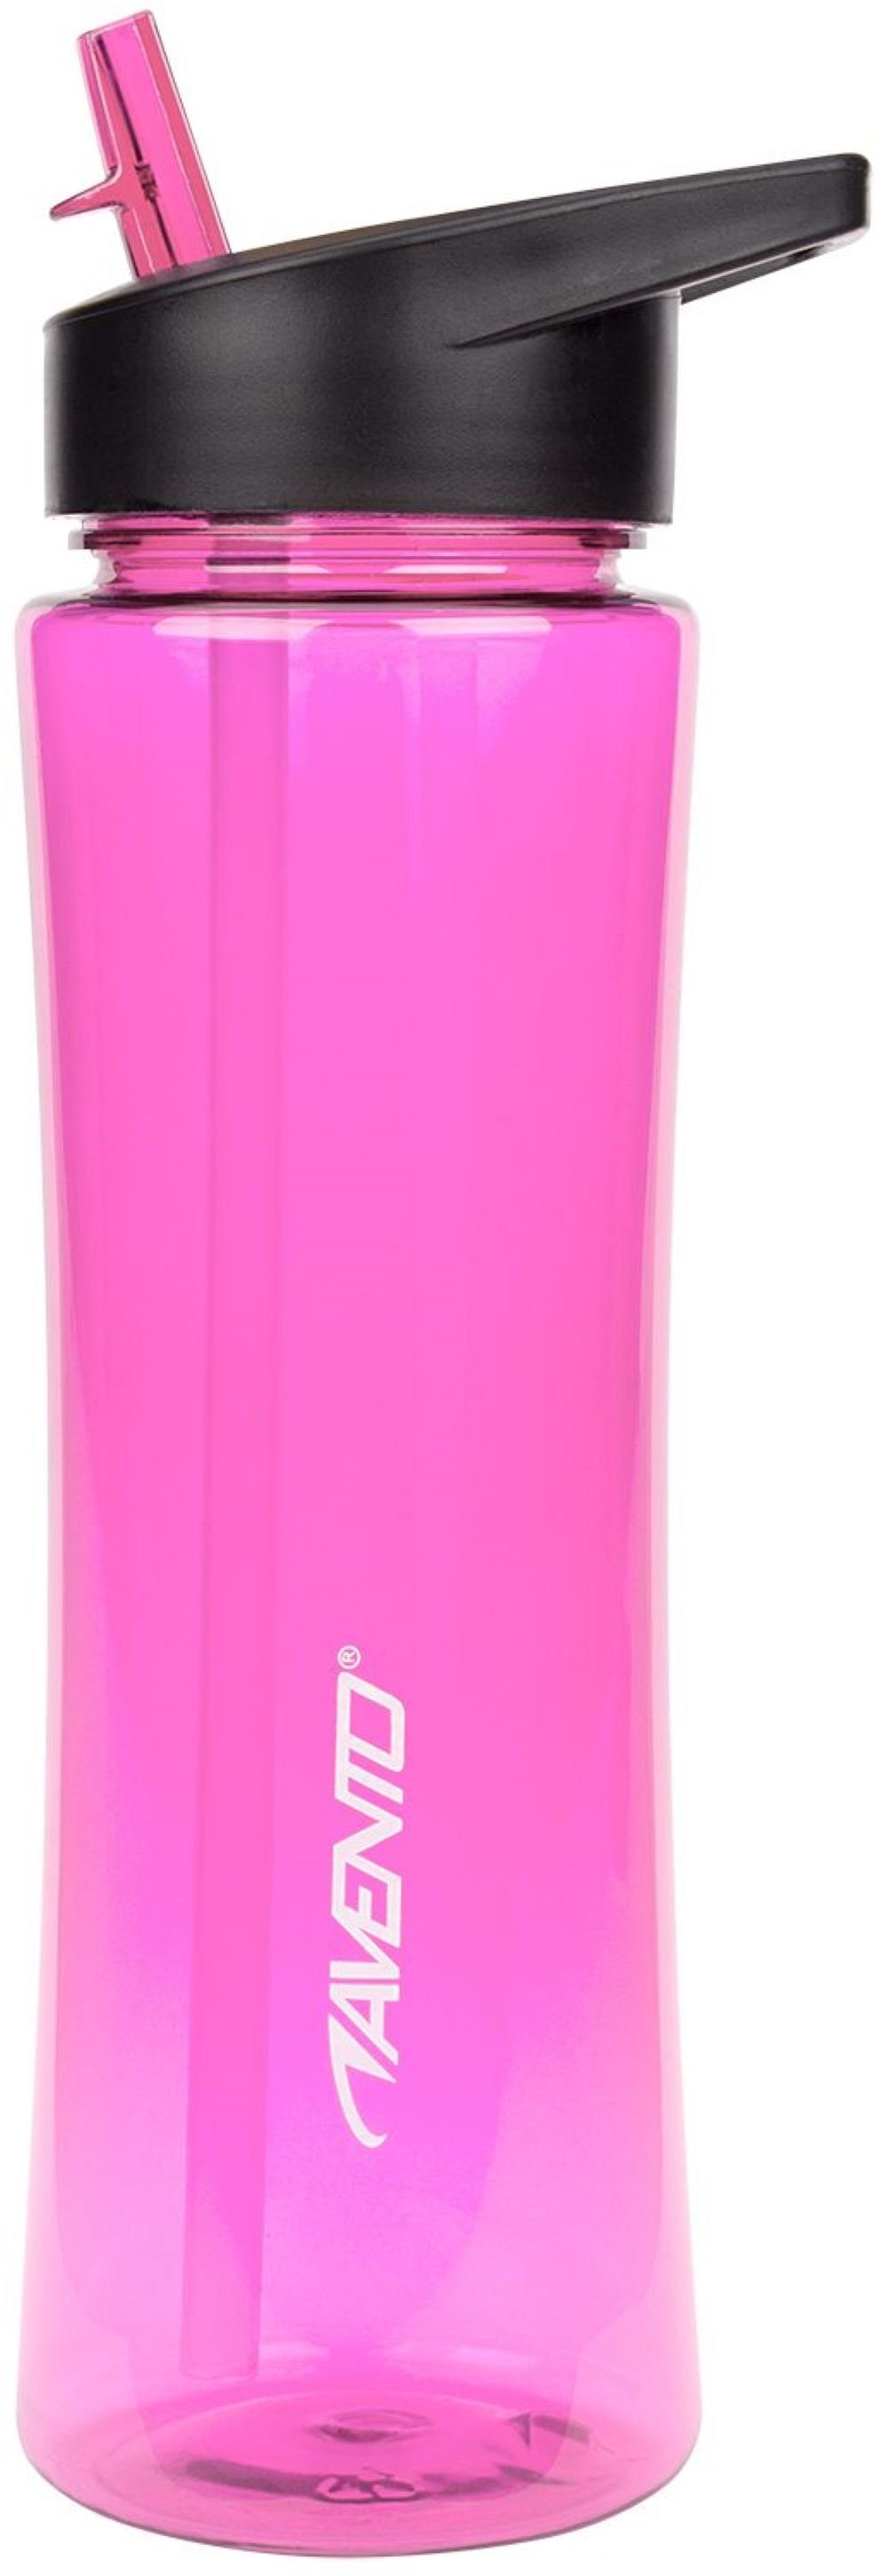 Avento Trinkflasche »Fitness Sport Trinkflasche 0,66 Liter - Höhe 26cm  Ø8,7cm - Tritan Kunststoff Flasche Pink« online kaufen | OTTO